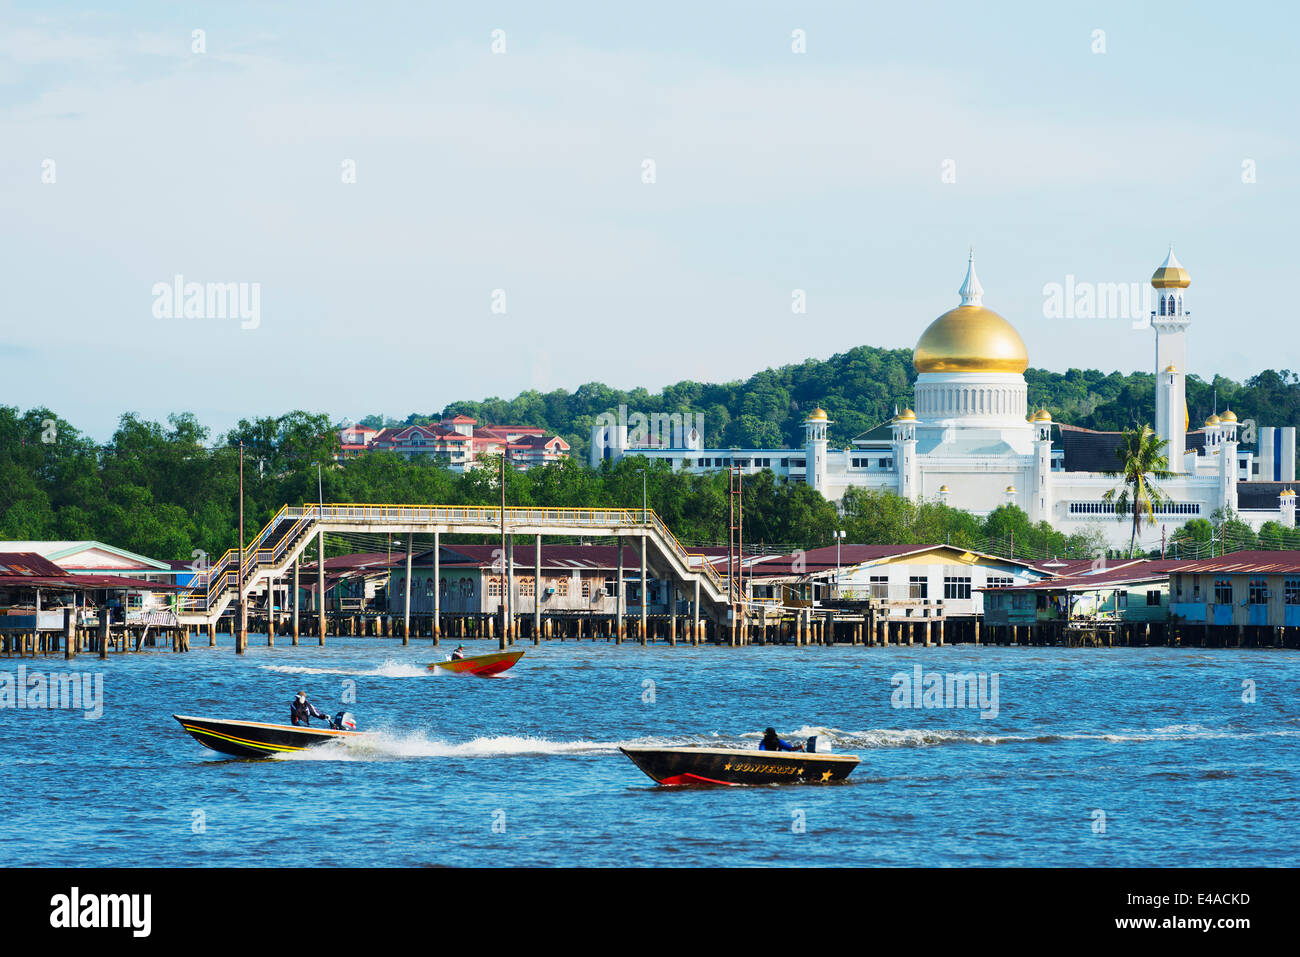 Il Sud Est Asiatico, Regno del Brunei Bandar Seri Begawan, la Moschea di Omar Ali Saifuddien Foto Stock